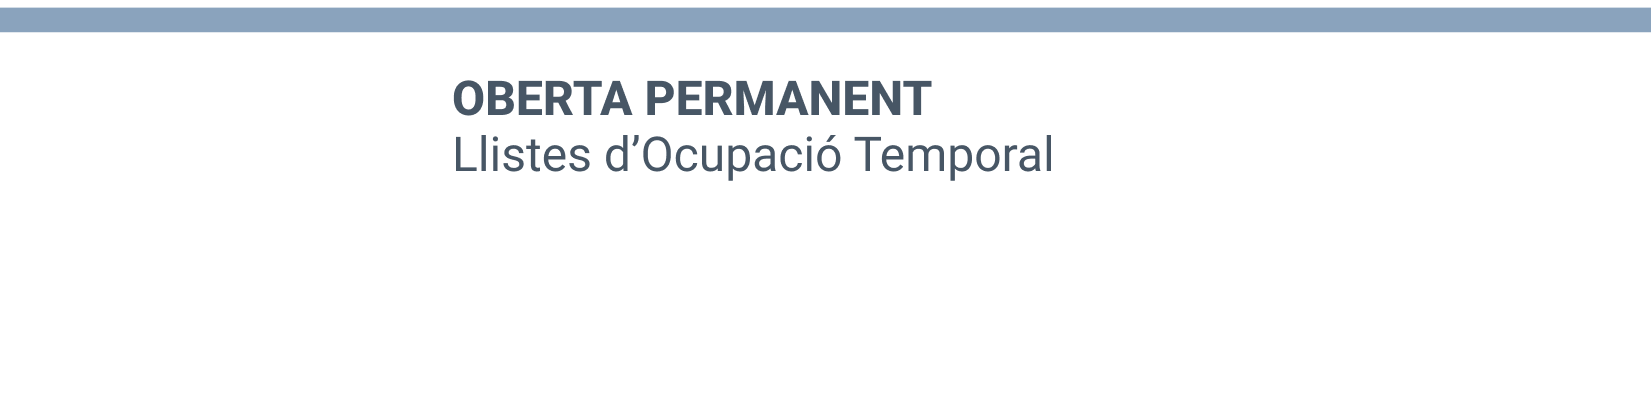 Imatge de capçalera de la secció d'inscripció len les listes d'ocupació temporal oberta permanent de la Conselleria de Sanitat de la Generalitat Valenciana.